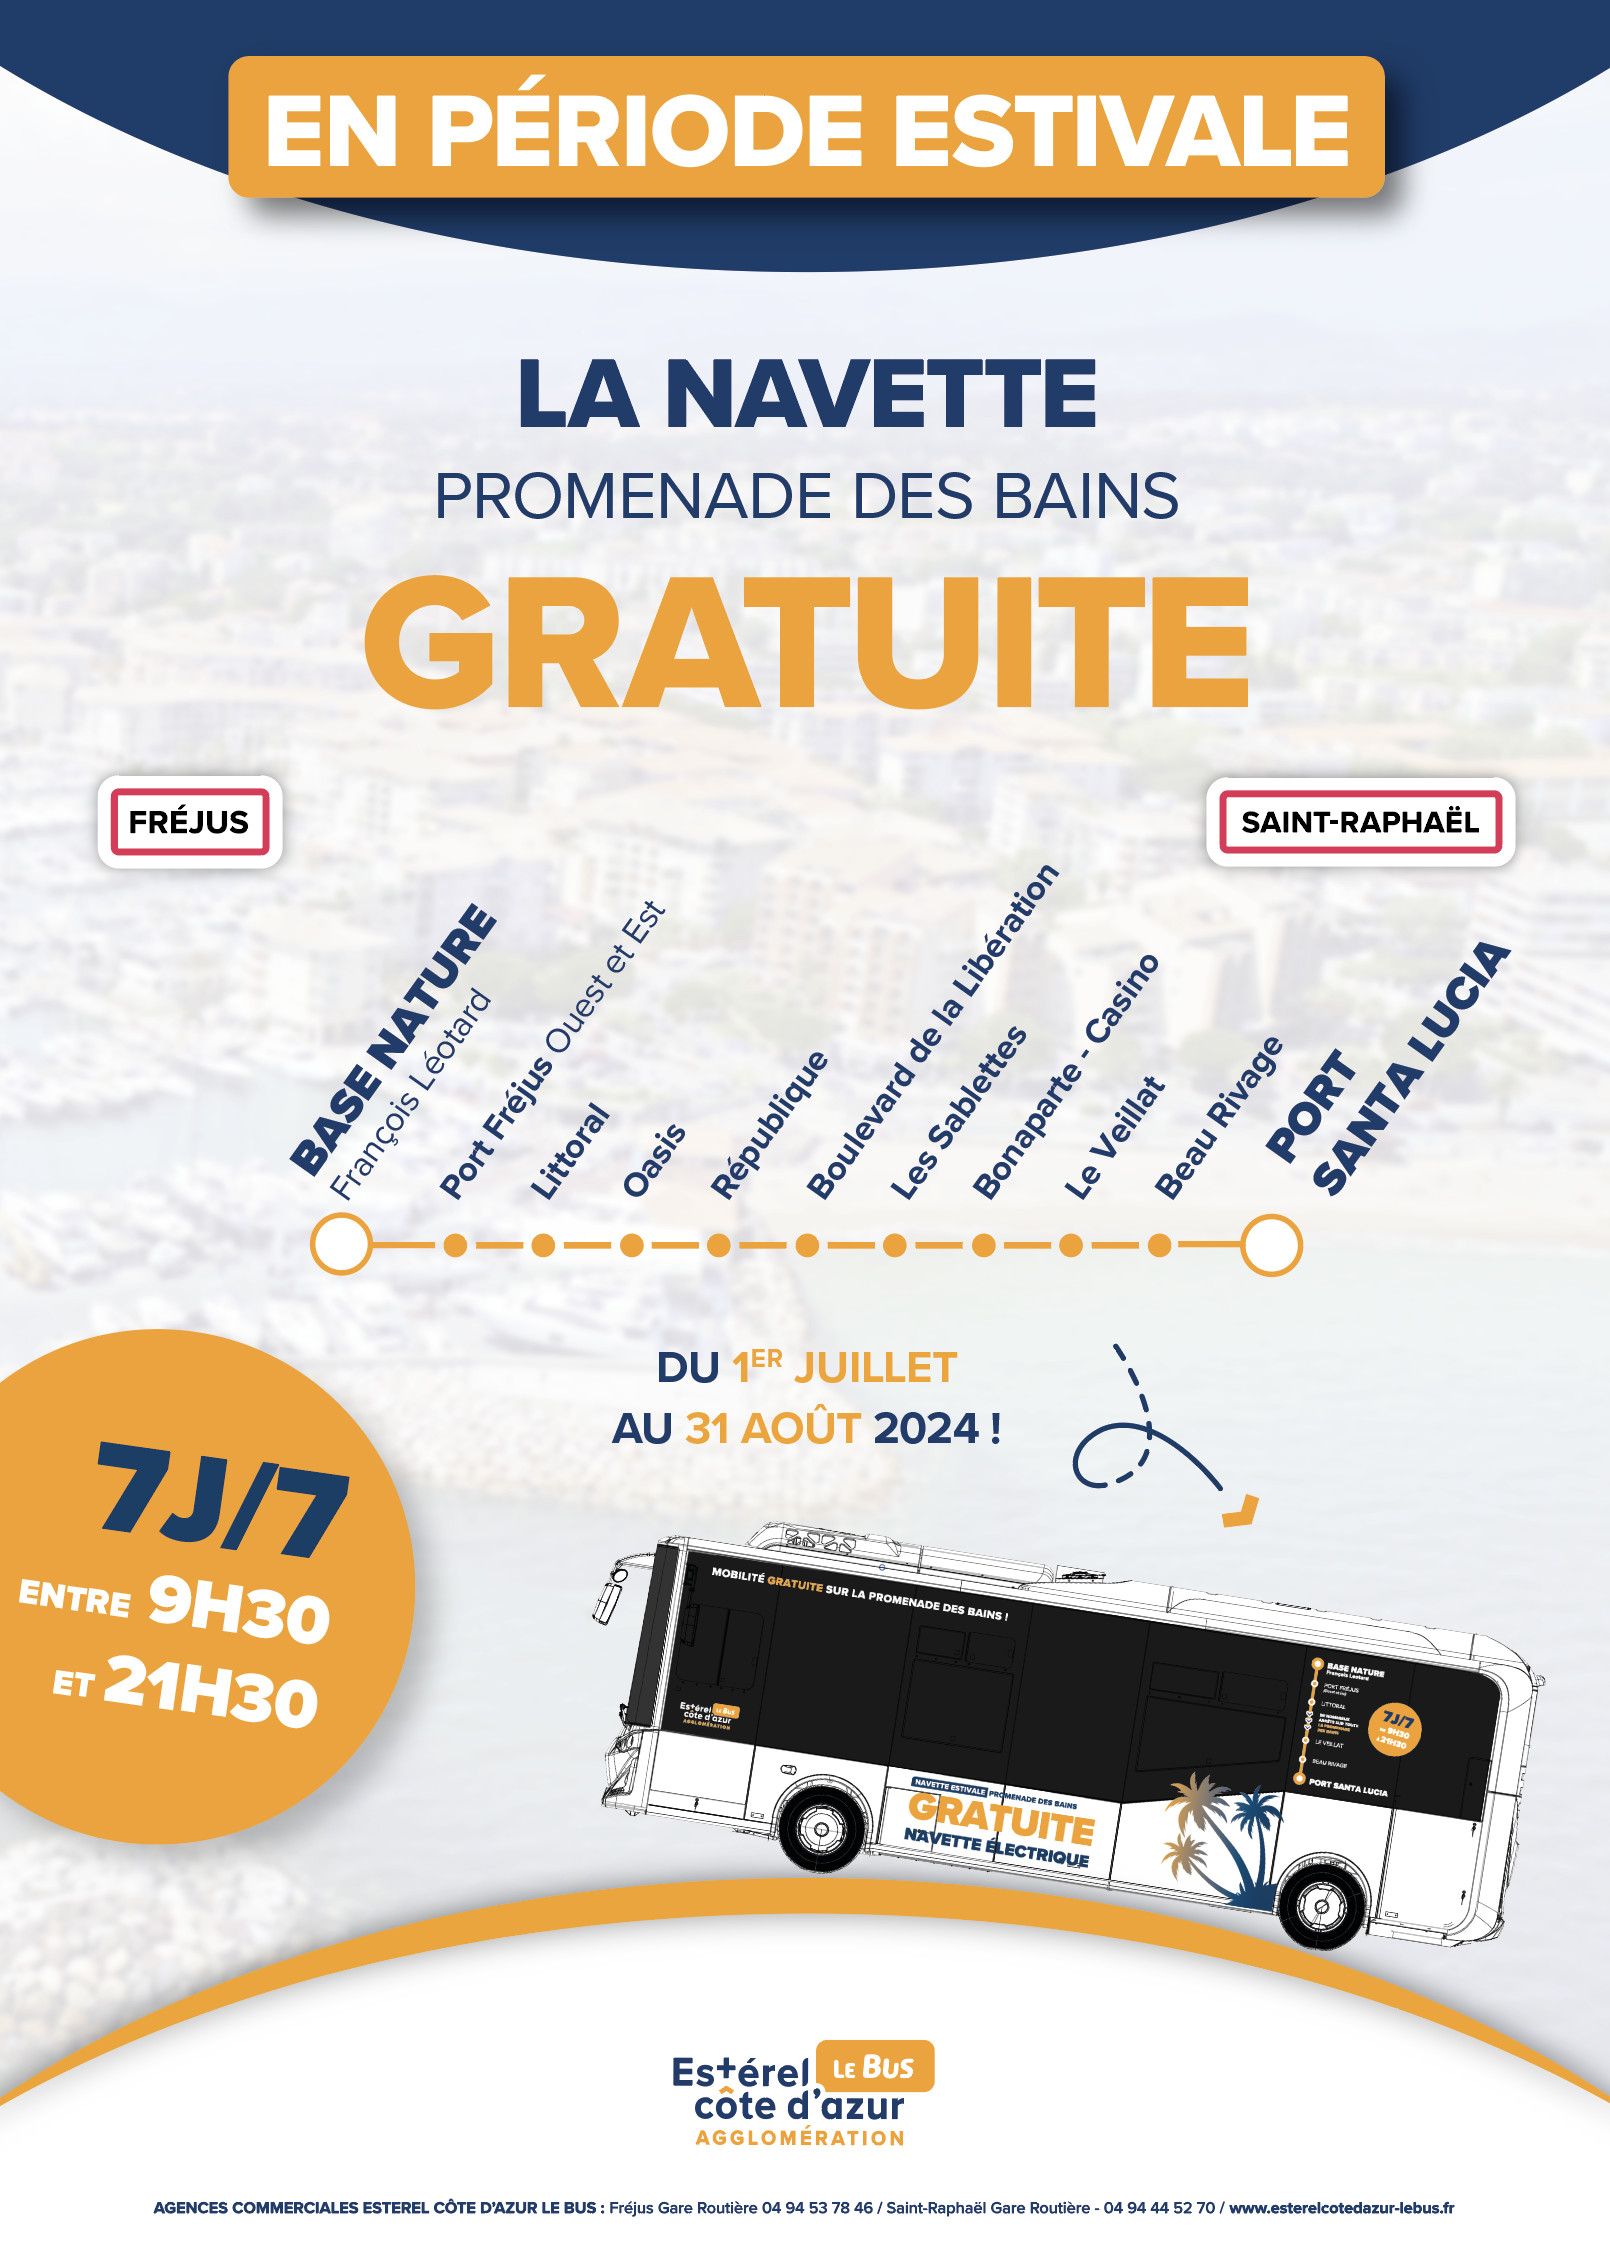 Navette Gratuite Promenade des Bains